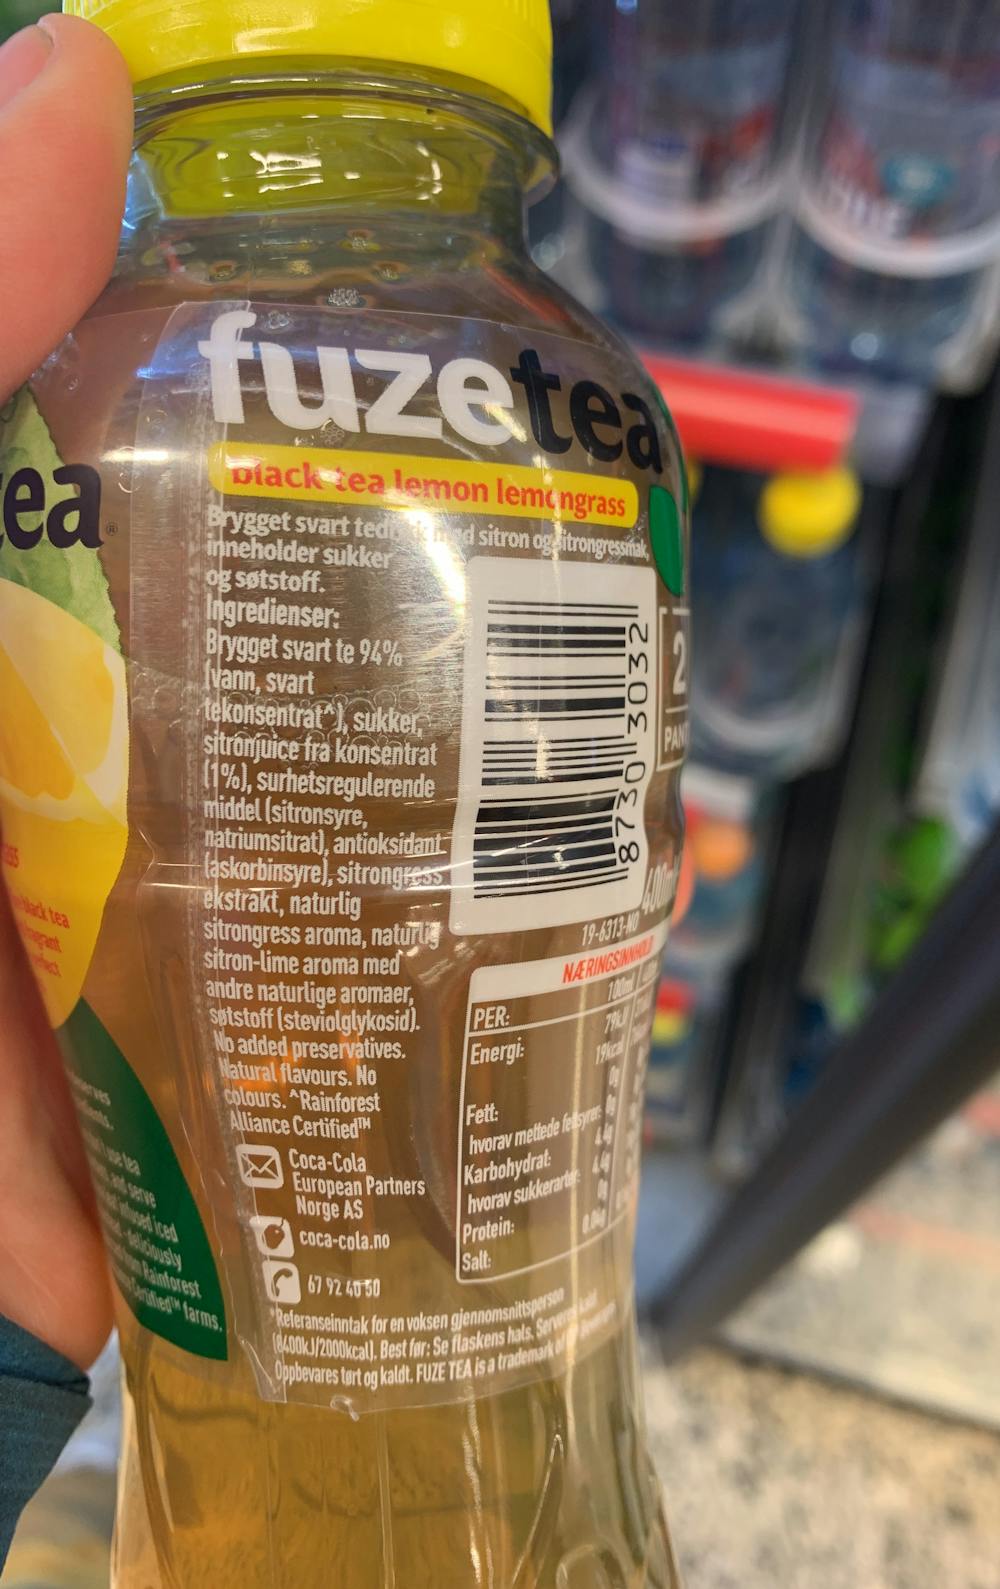 Ingredienslisten til Fuze tea Fuze tea lemon & lemongrass